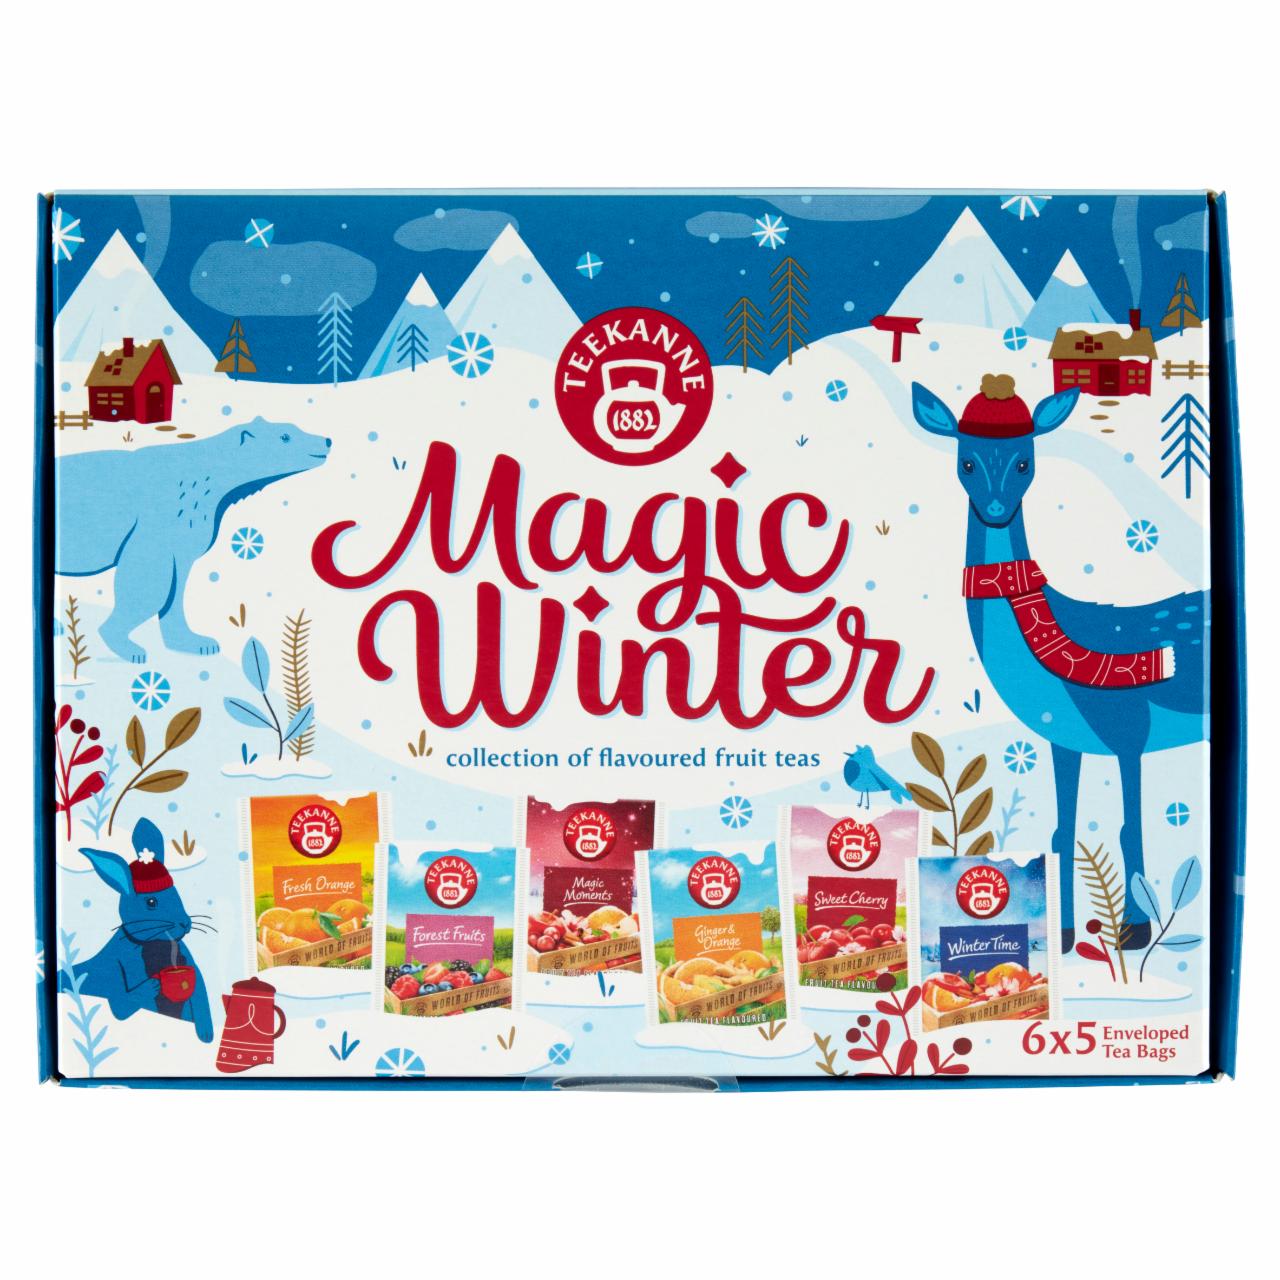 Képek - Teekanne Magic Winter ízesített gyümölcstea válogatás 30 filter 72,5 g